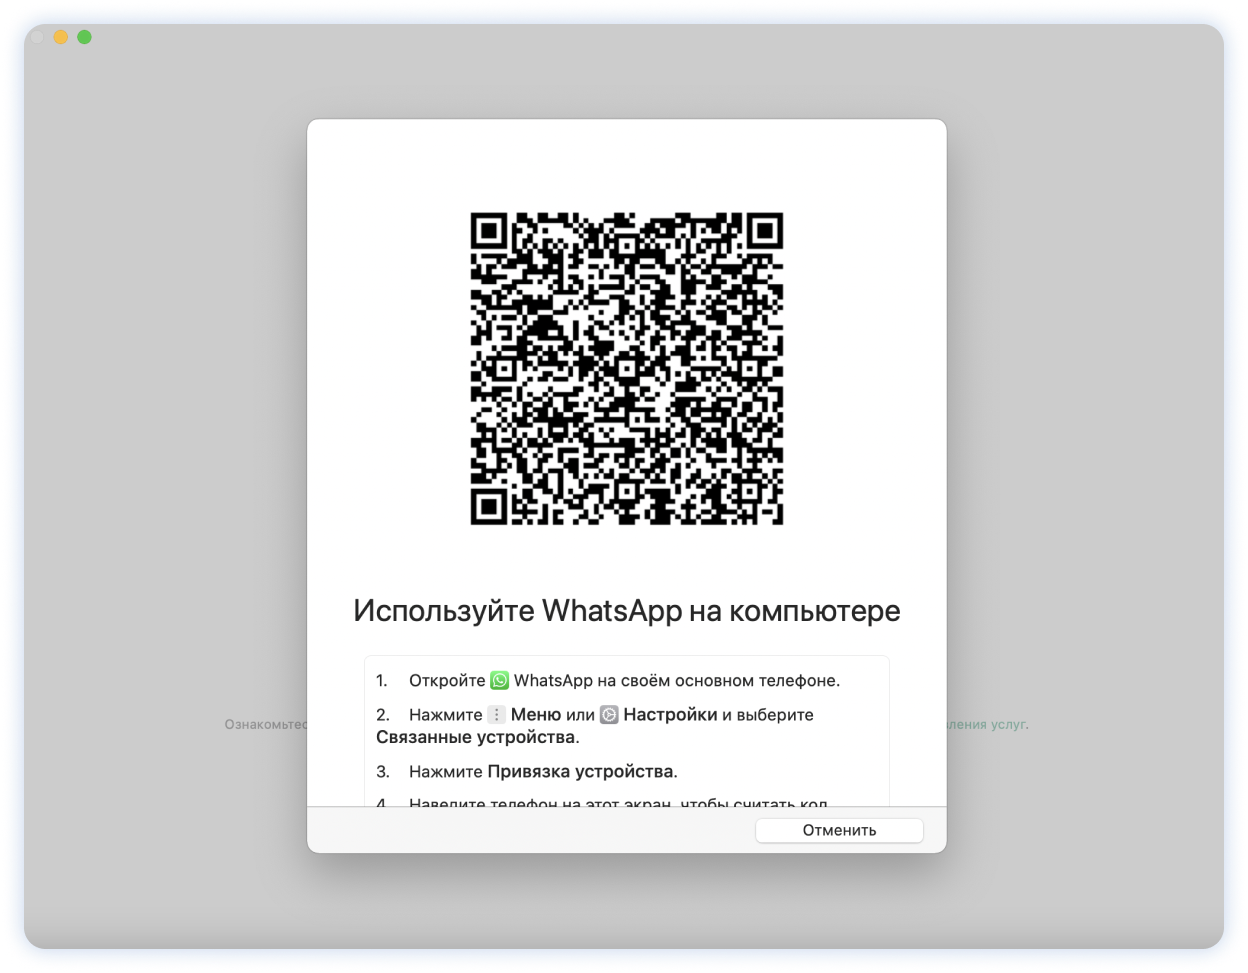 Синхронизация WhatsApp*: как пользоваться мессенджером сразу на нескольких устройствах